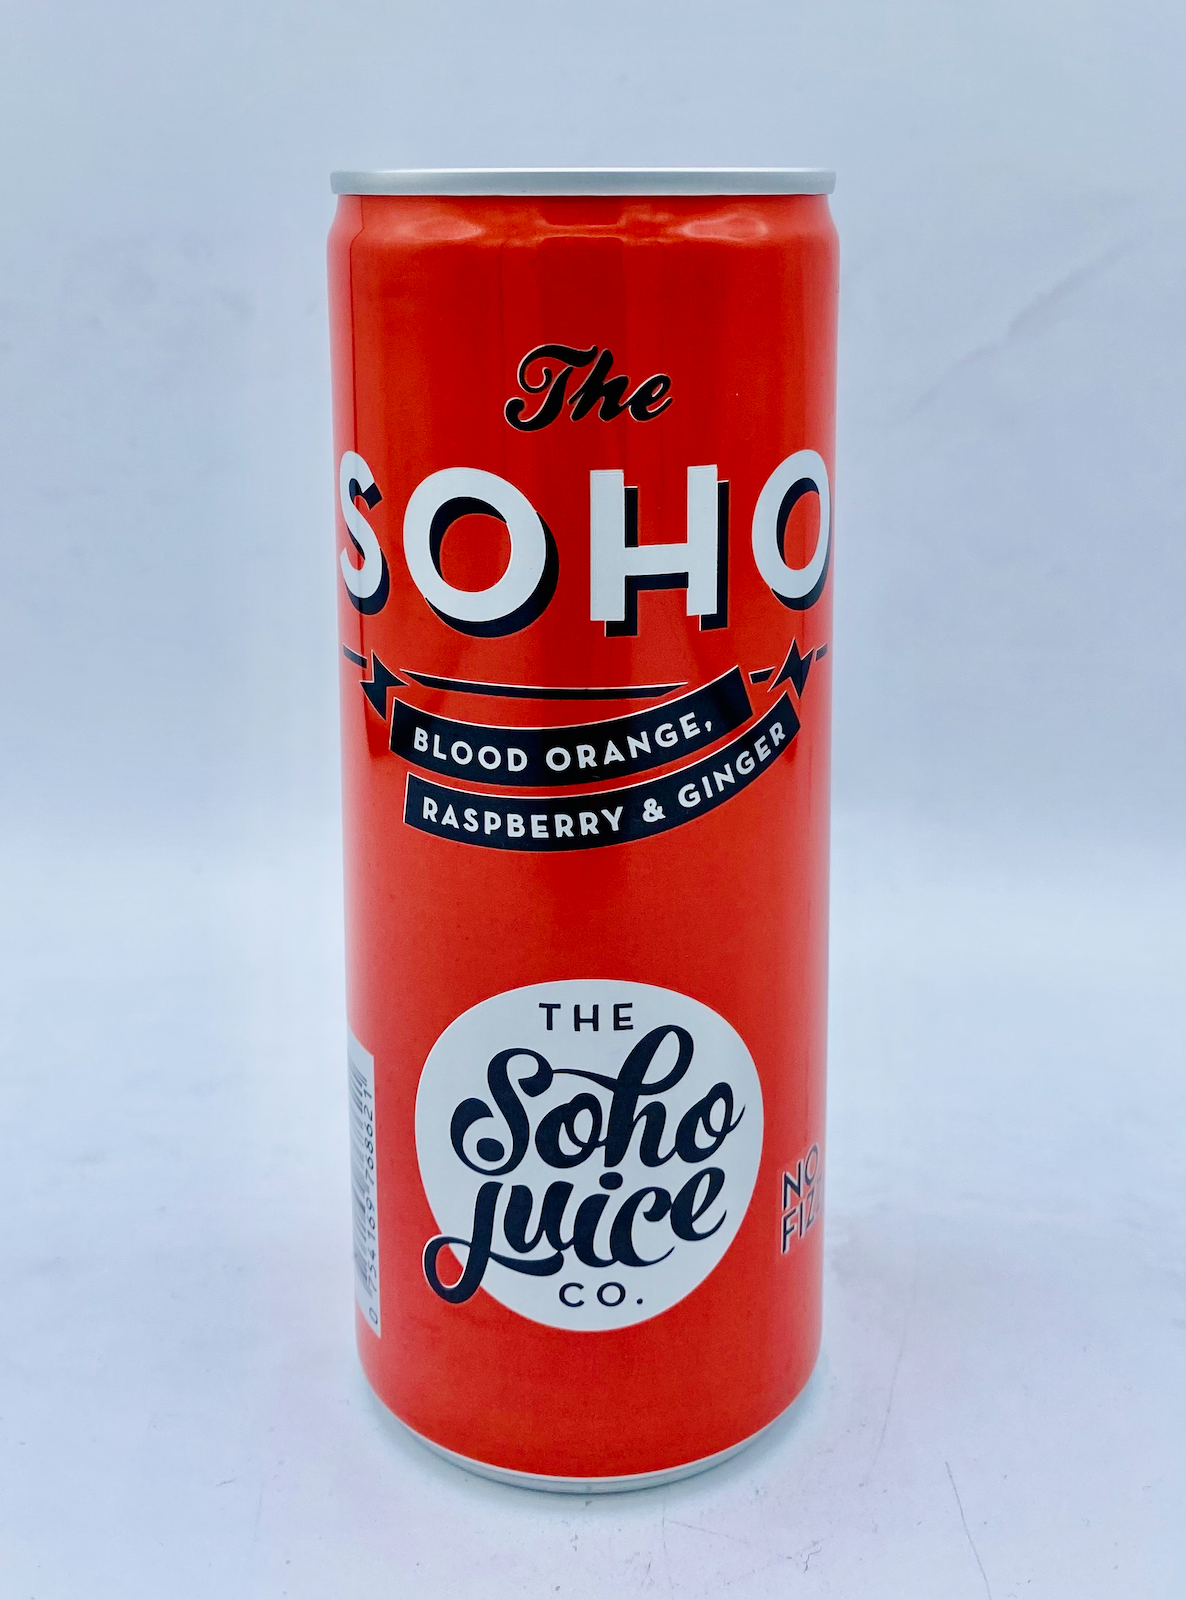 Soho Juice Co. - Blood Orange, Raspberry & Ginger